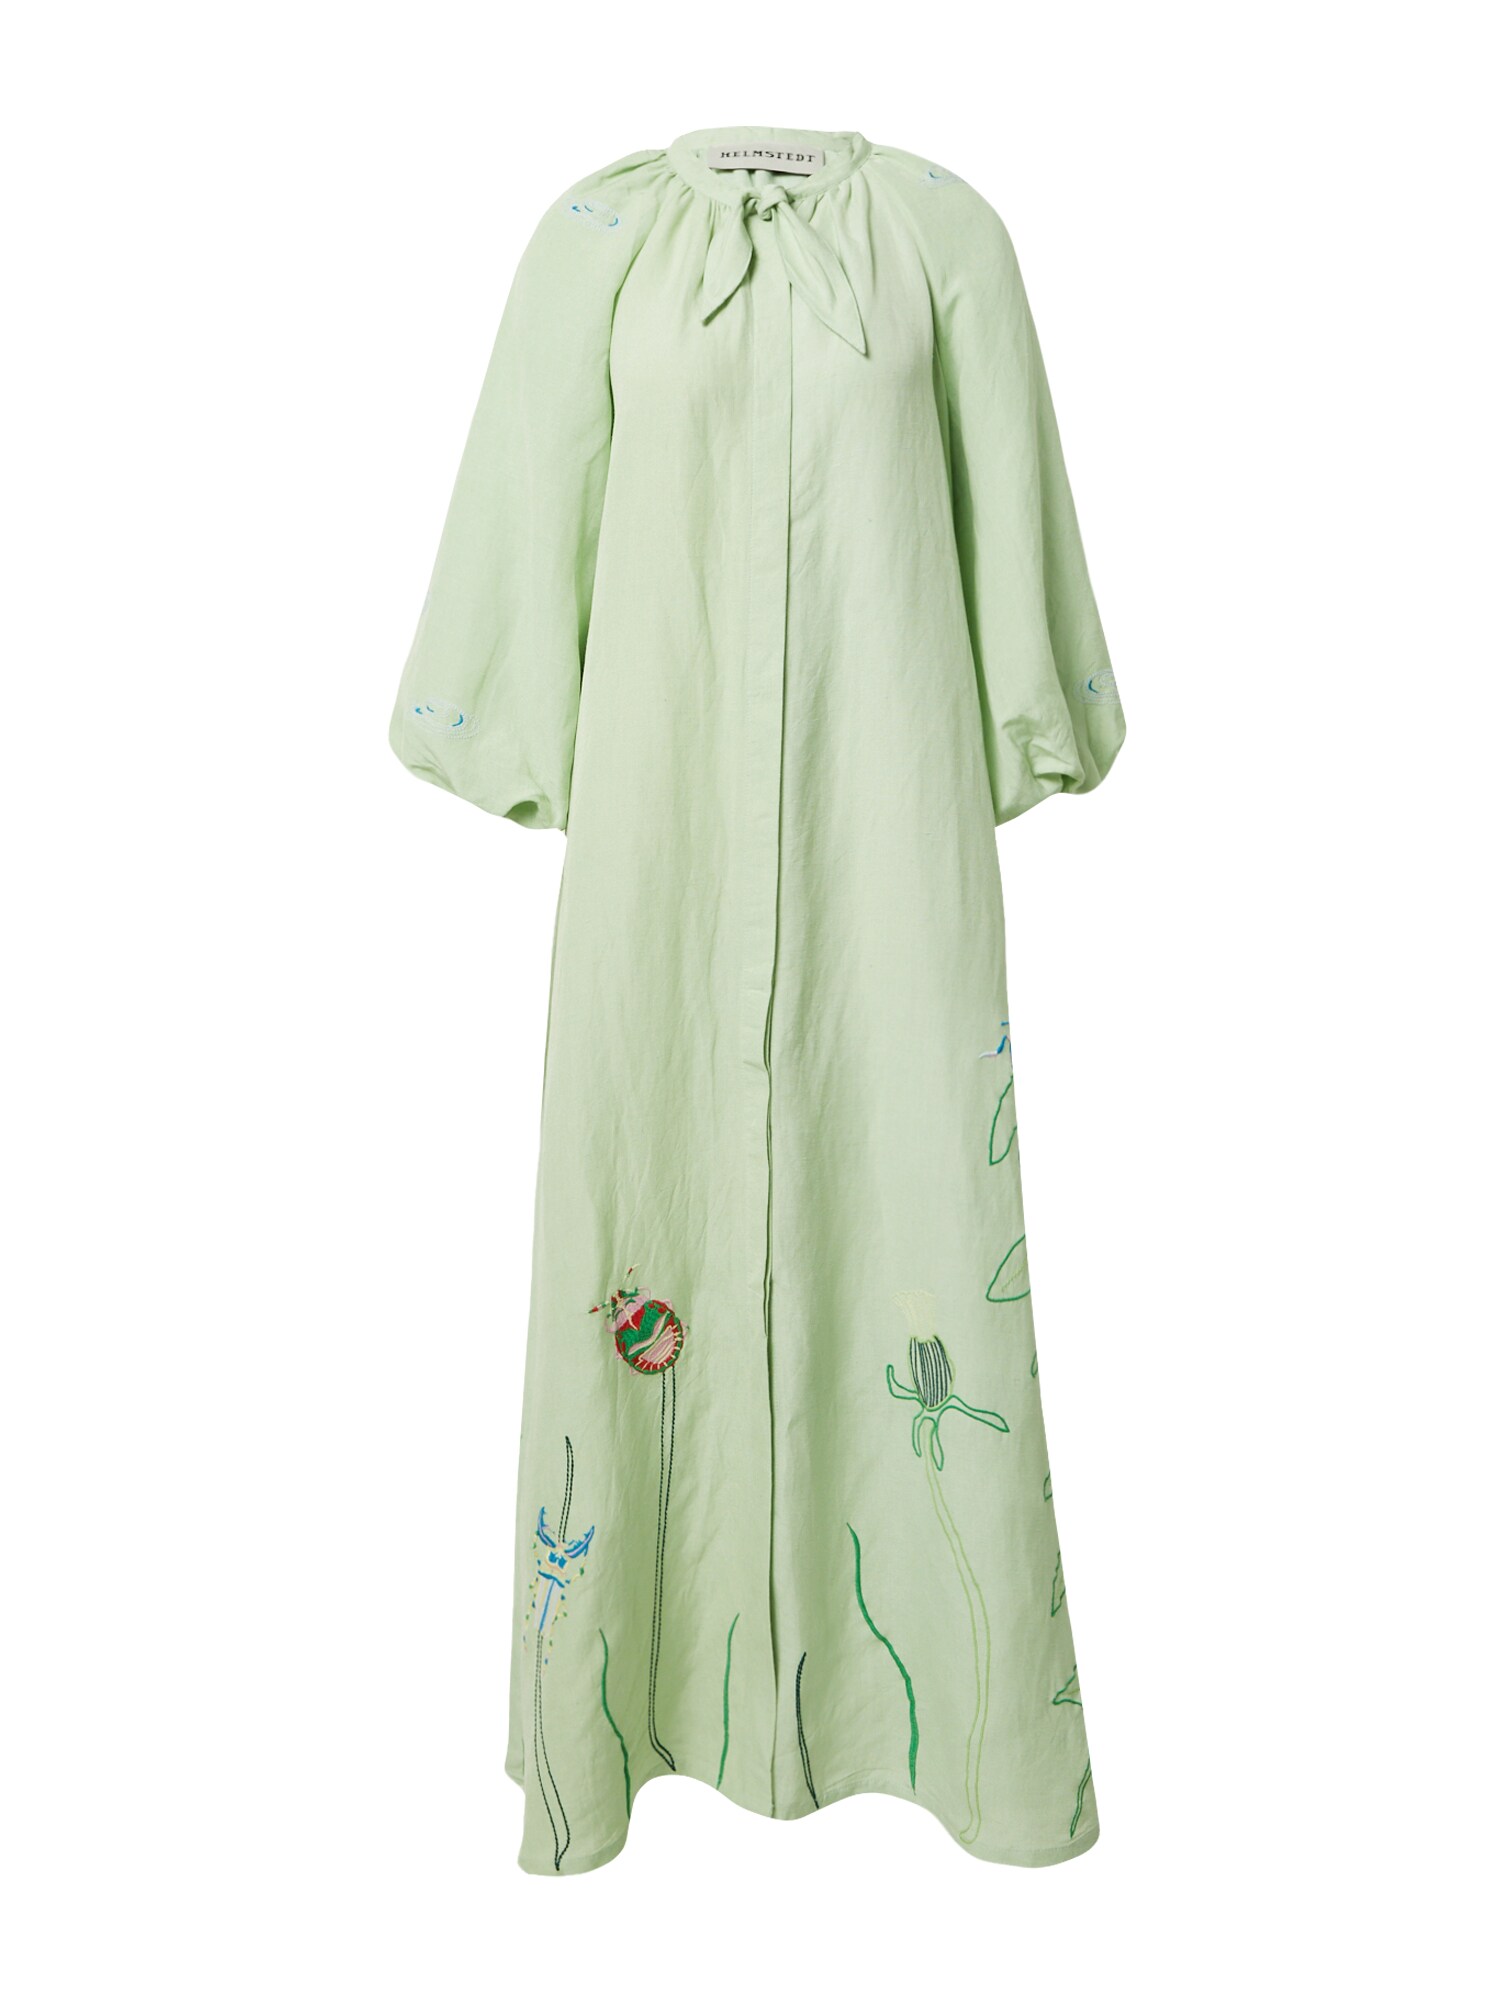 Helmstedt Palaidinės tipo suknelė sodri mėlyna („karališka“) / mėtų spalva / žolės žalia / šviesiai žalia